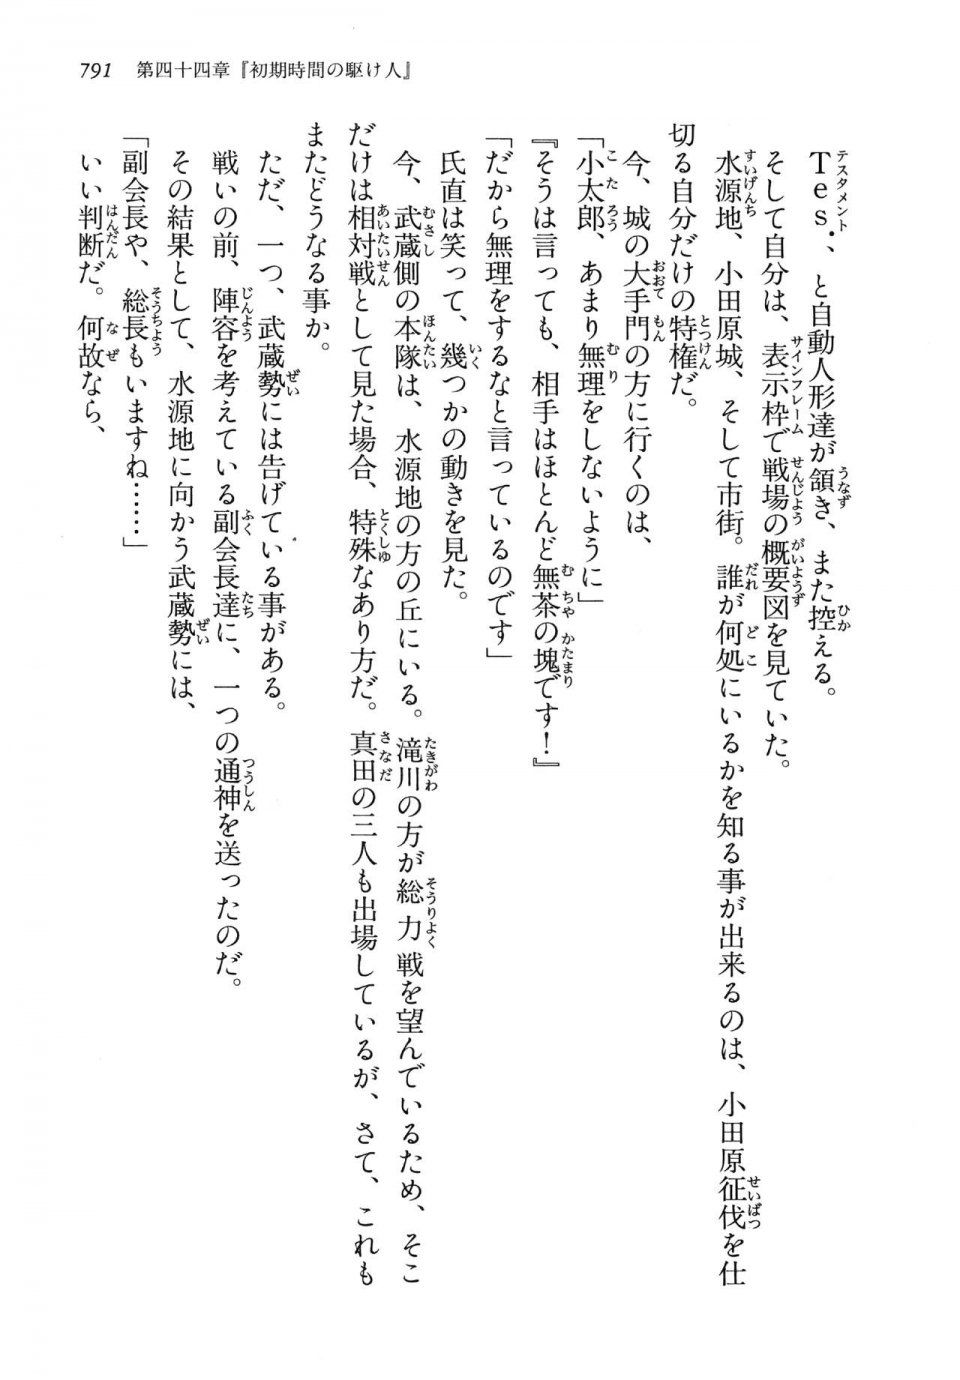 Kyoukai Senjou no Horizon LN Vol 14(6B) - Photo #791